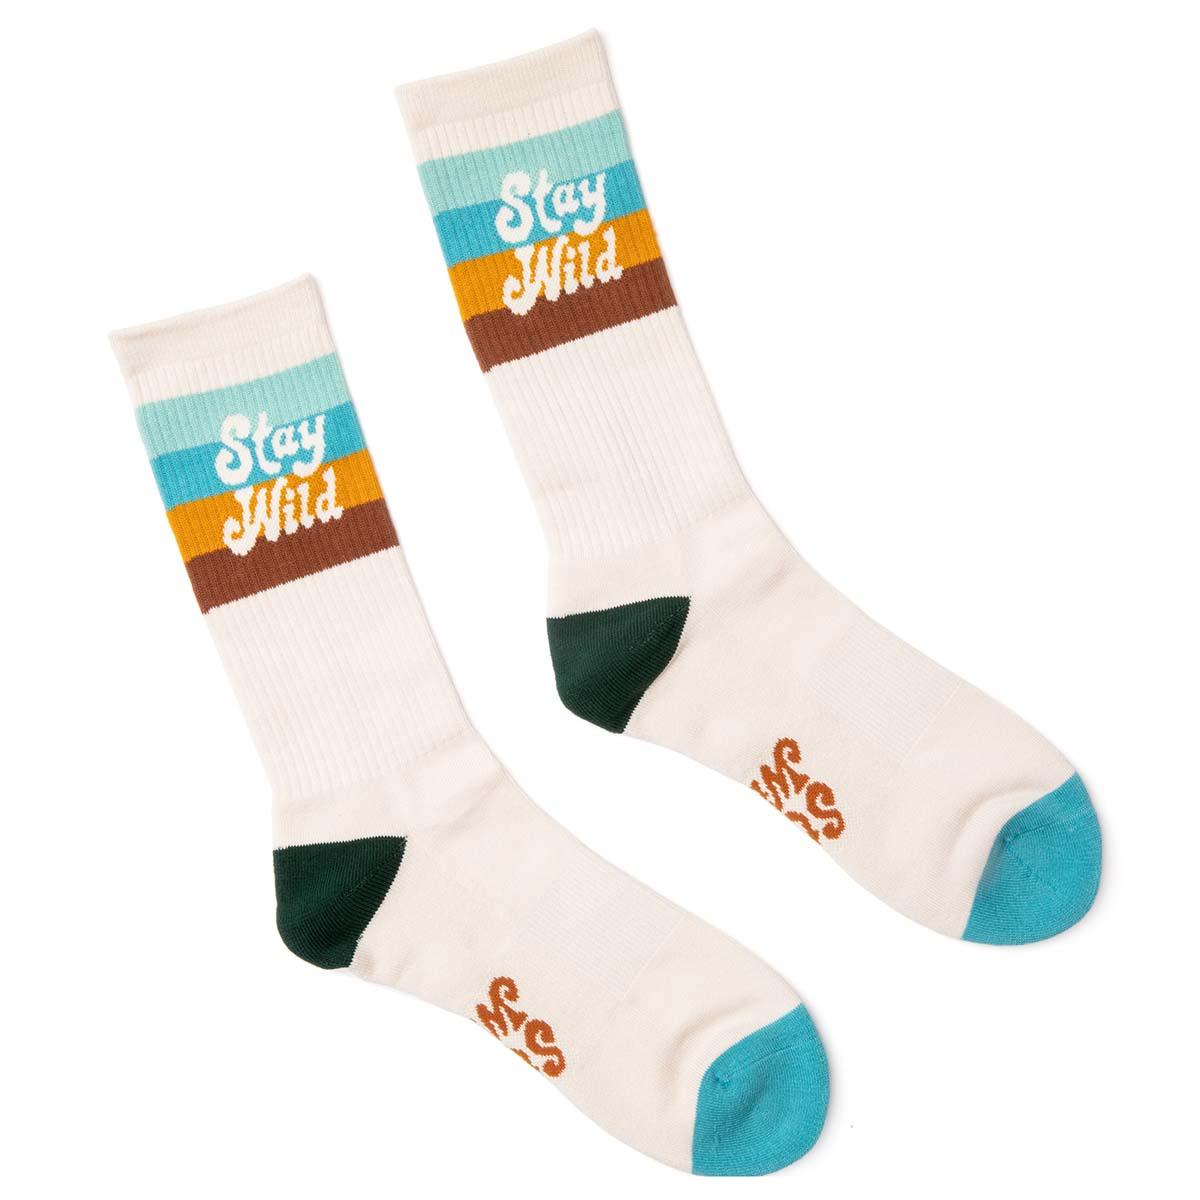 Stay Wild Socks - Trek Light